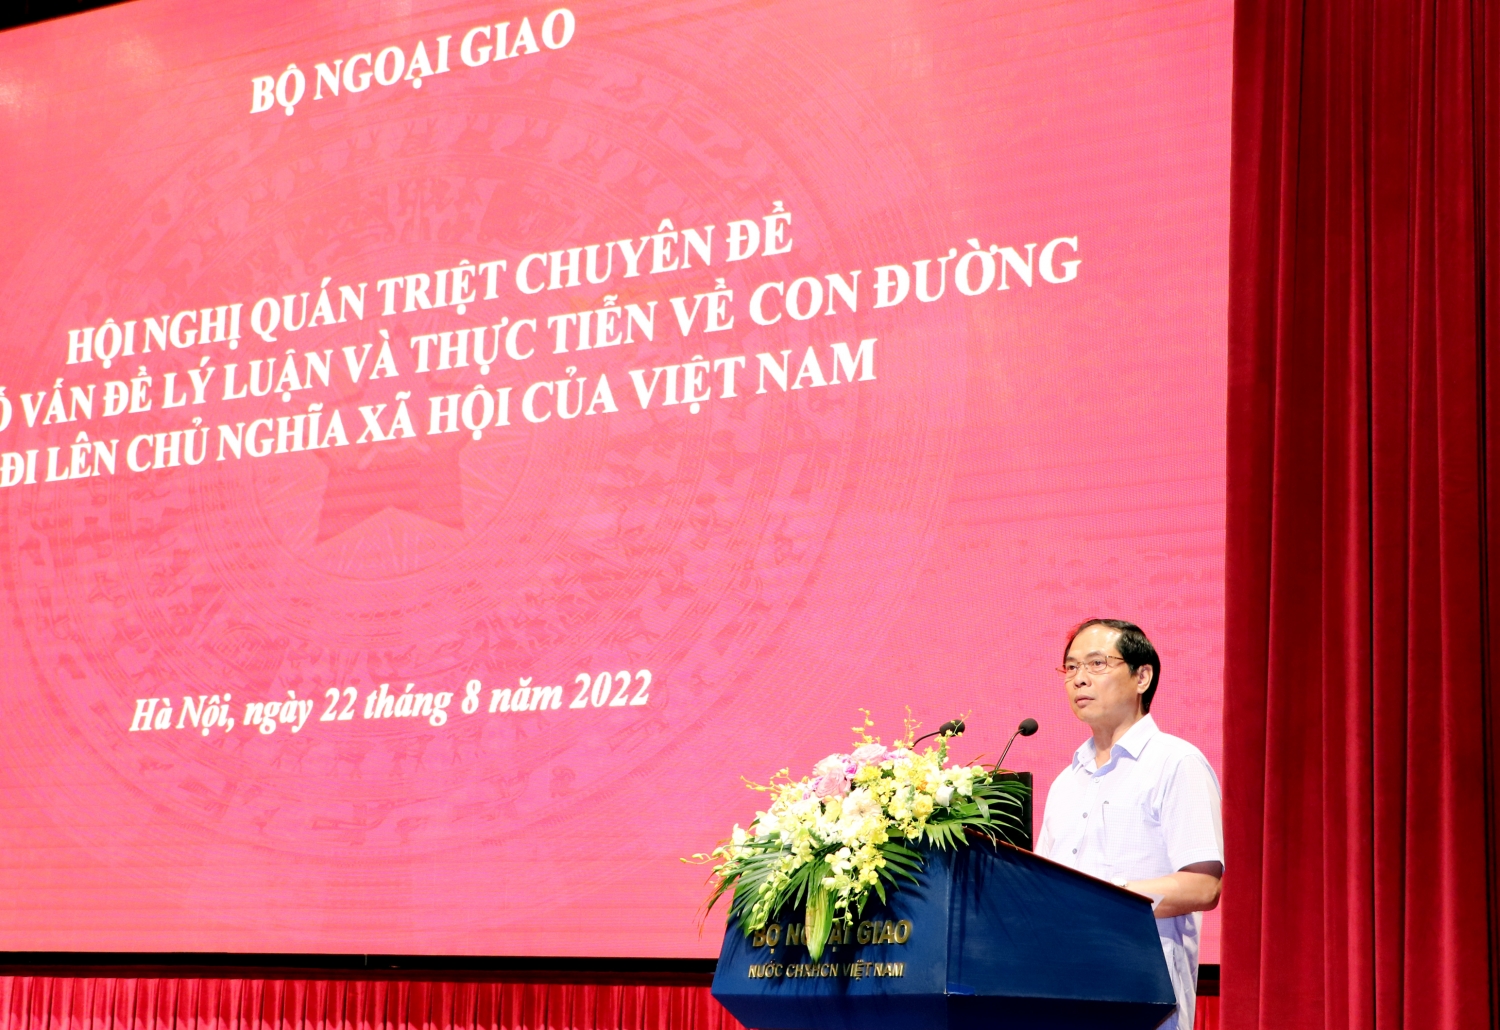 Bộ Ngoại giao tổ chức Hội nghị nghiên cứu, học tập nội dung cuốn sách và một số bài viết của Tổng Bí thư Nguyễn Phú Trọng